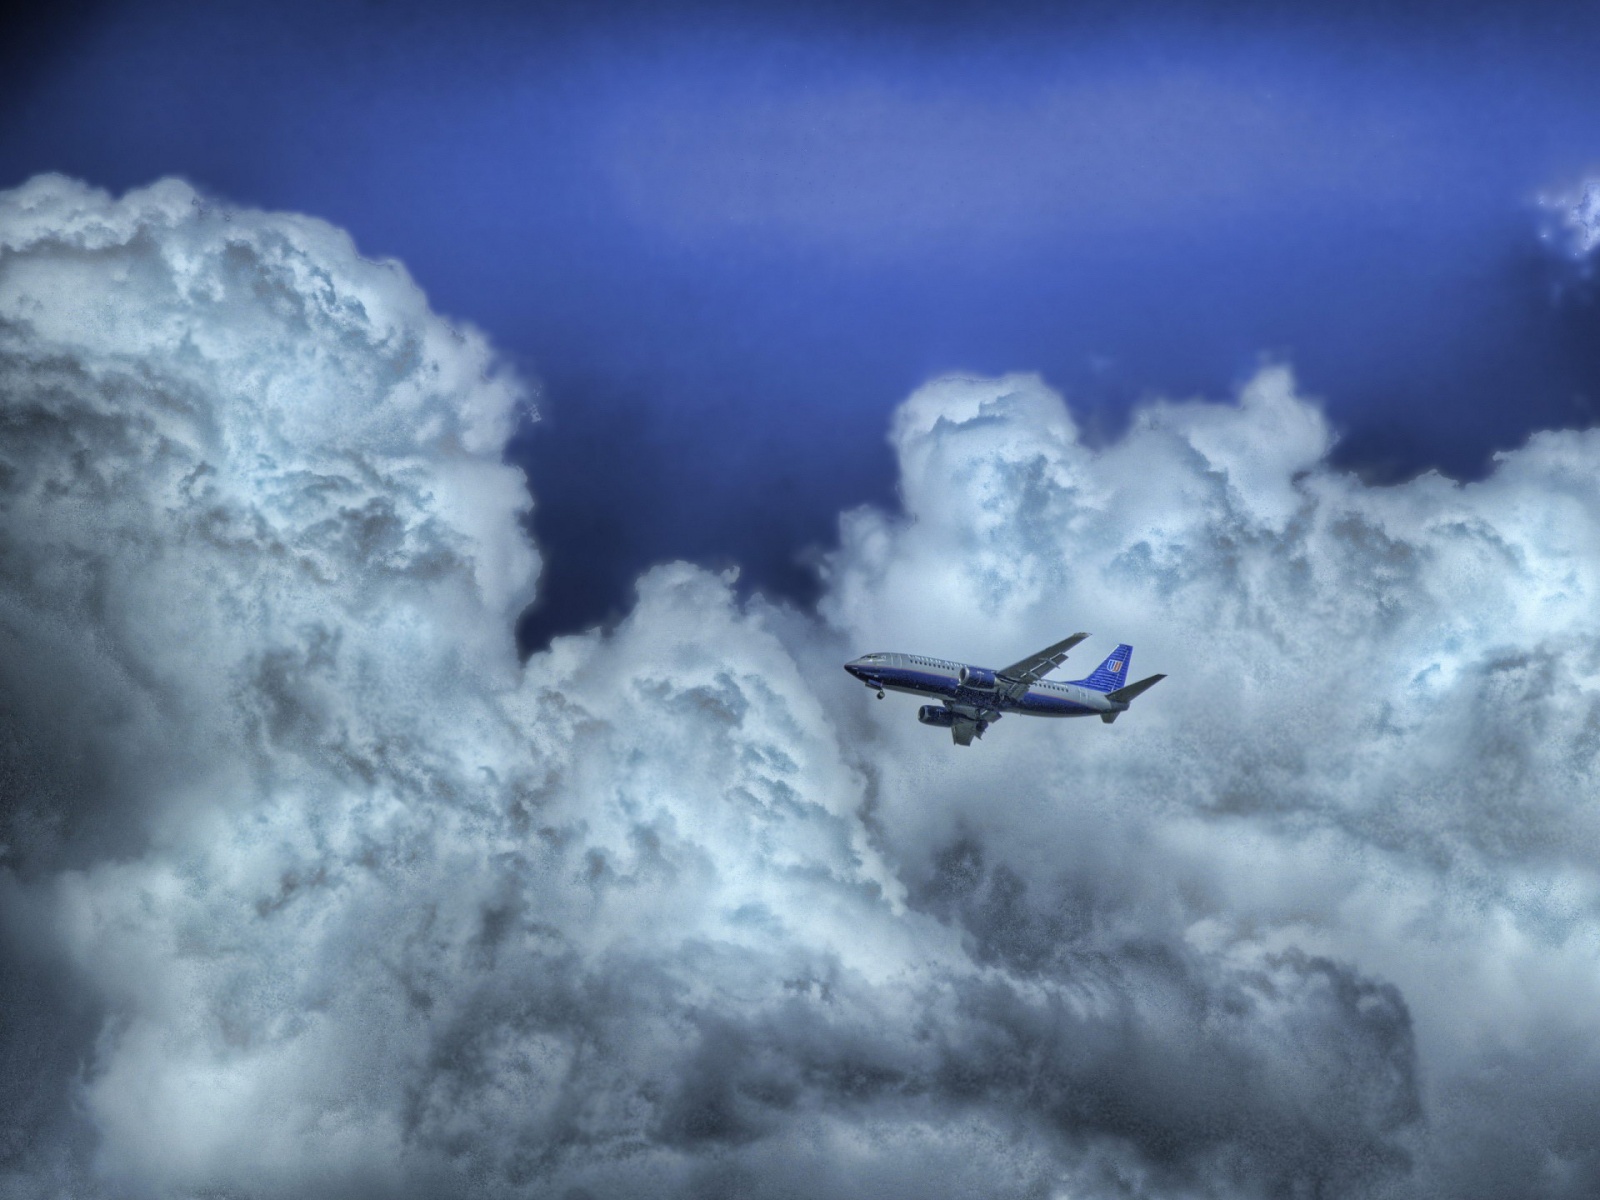 Fond d'ecran Avion  travers les nuages